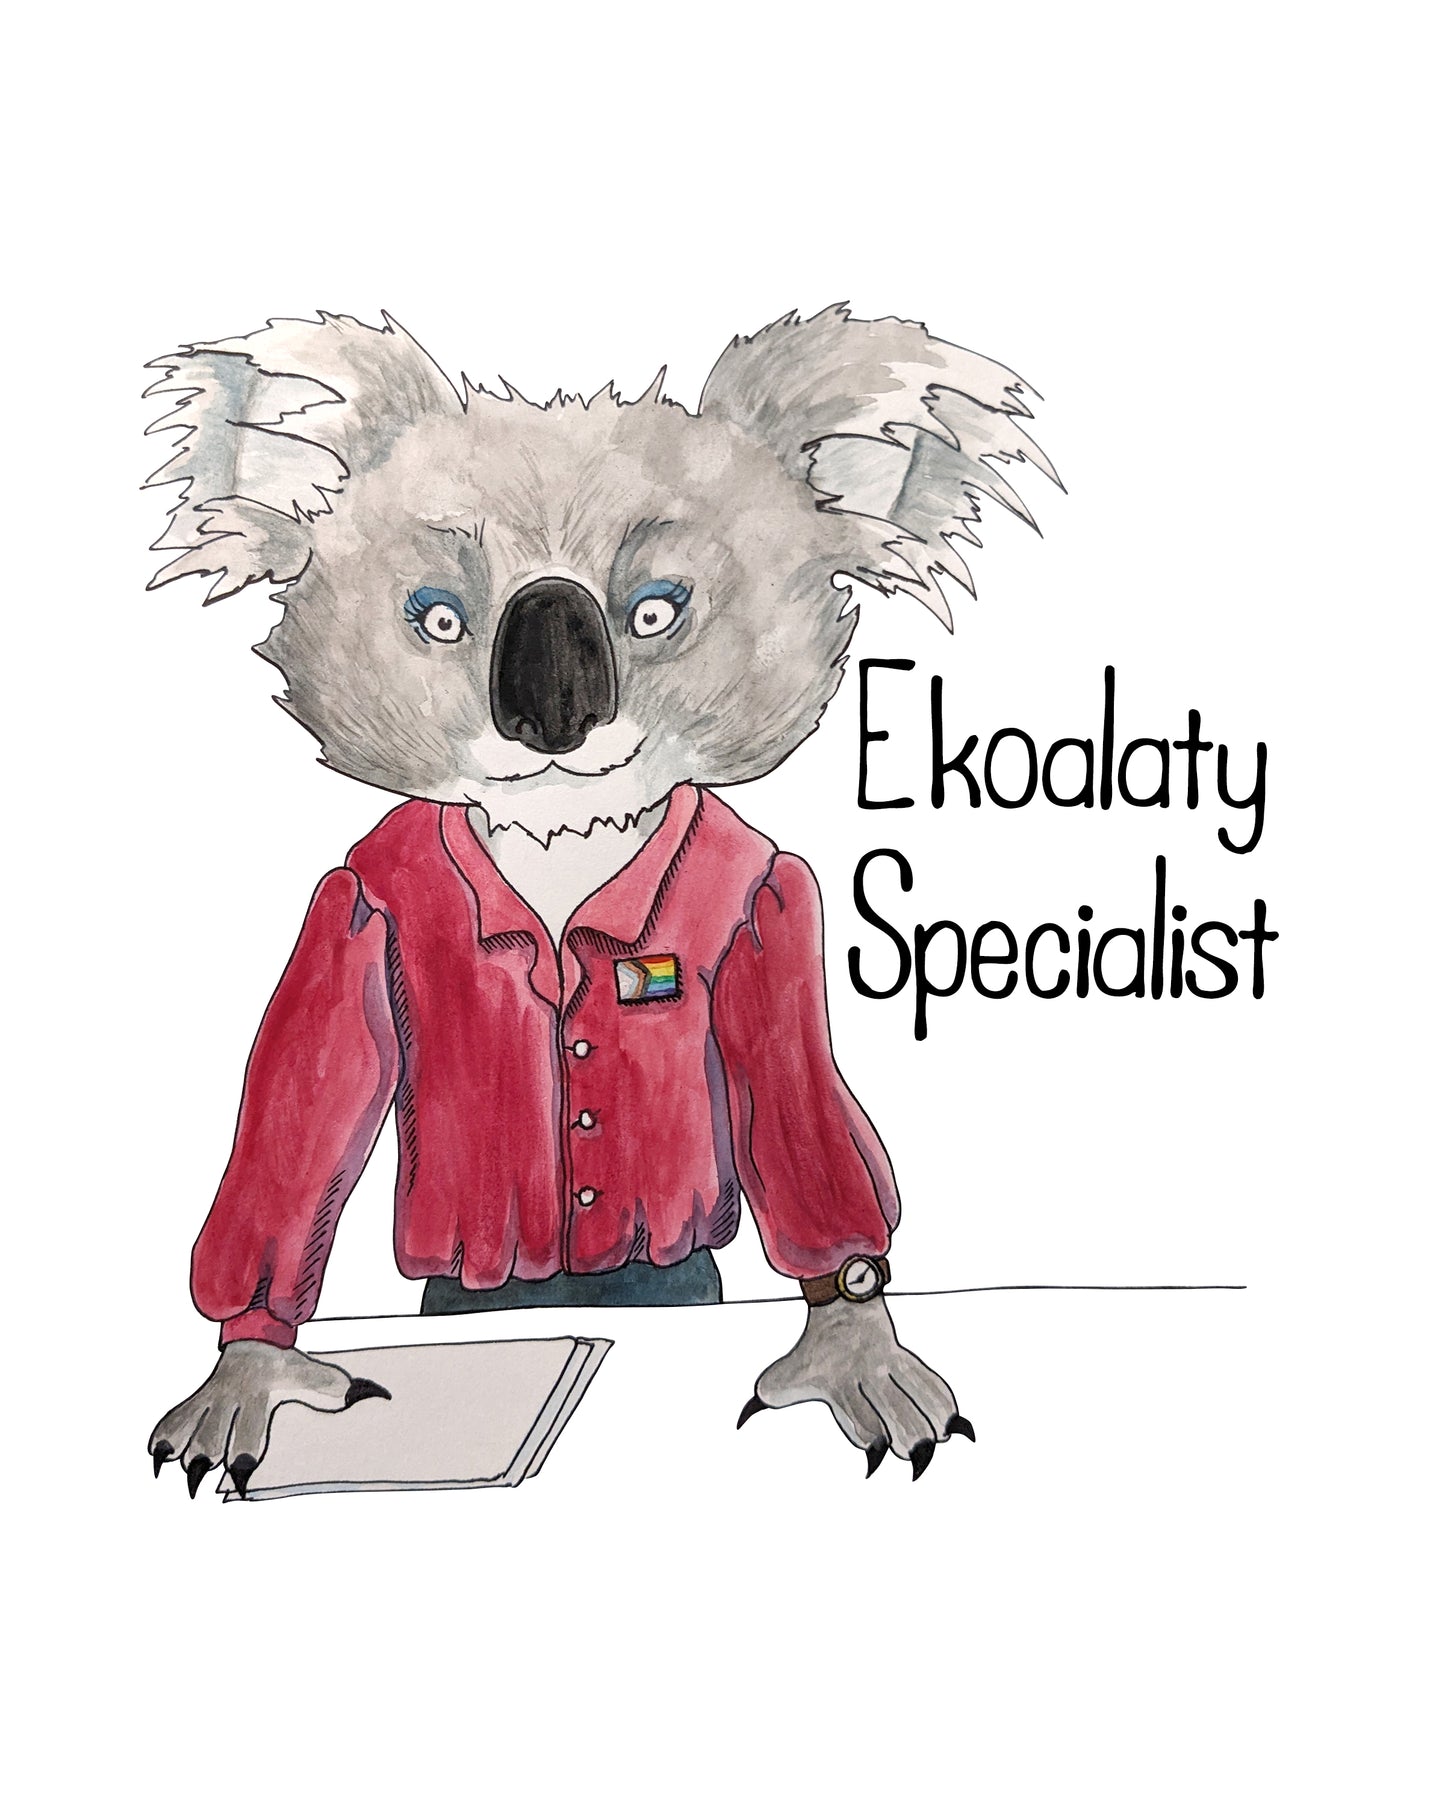 Ekoalaty Specialist